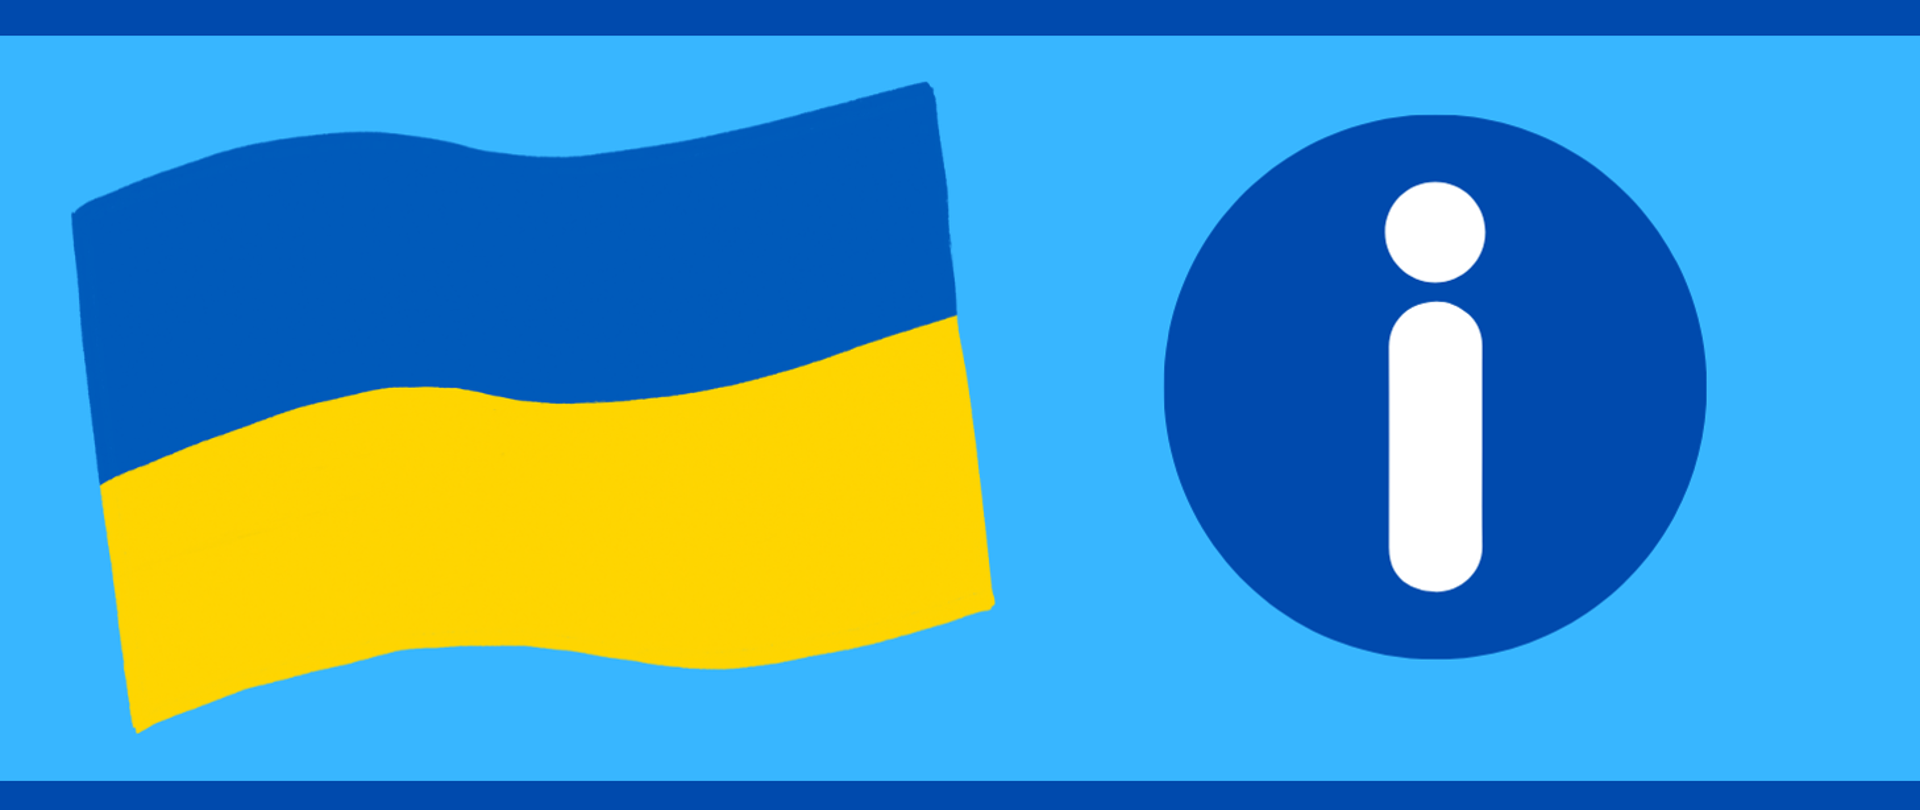 Na niebieskim tel flaga Ukrainy (niebiesko-żółta) oraz znak Informacja.